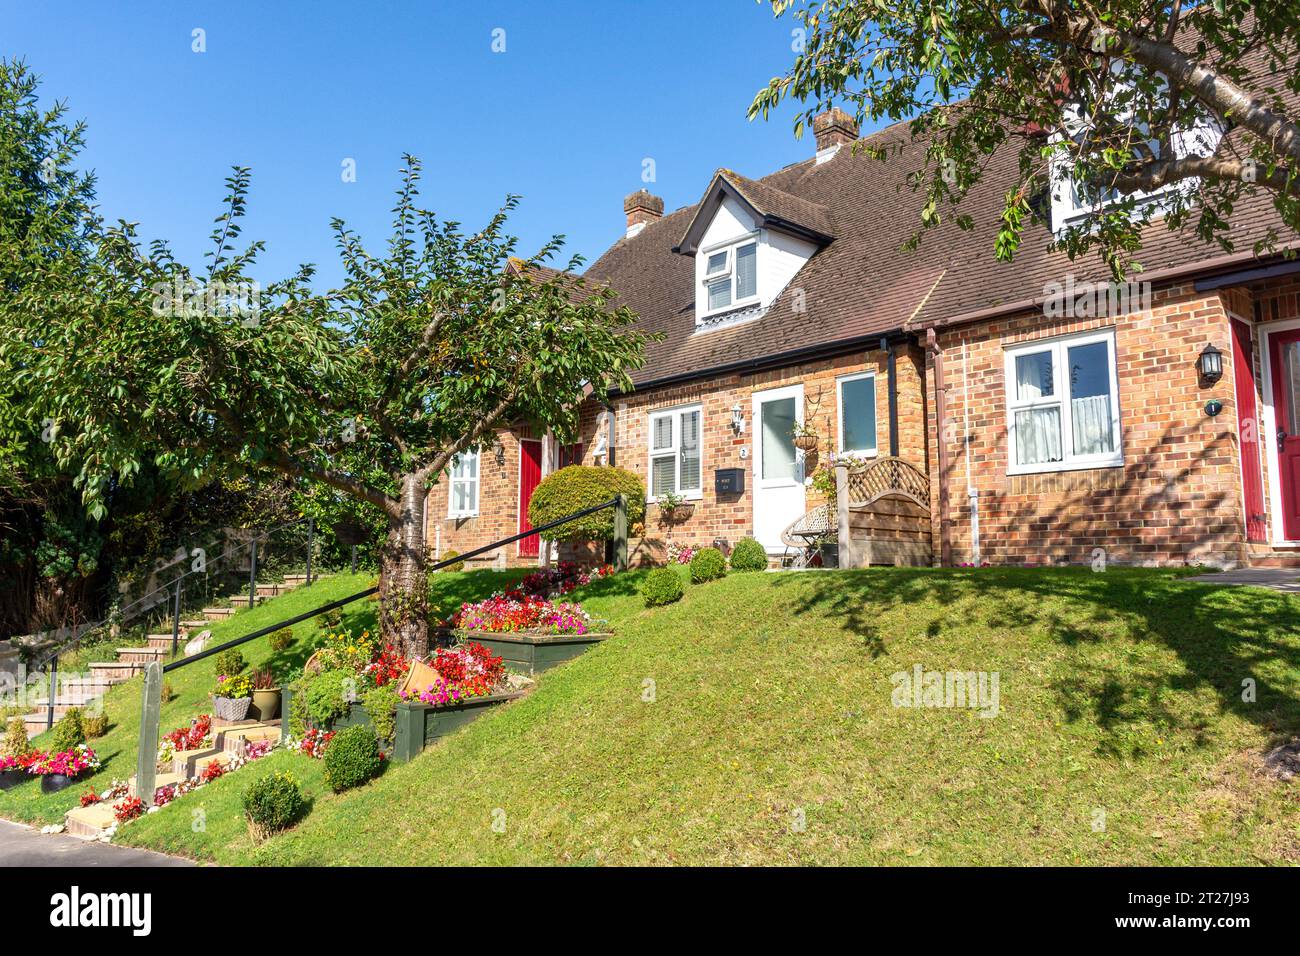 Maison jumelée et jardin, Streatfield Road, Heathfield, East Sussex, Angleterre, Royaume-Uni Banque D'Images